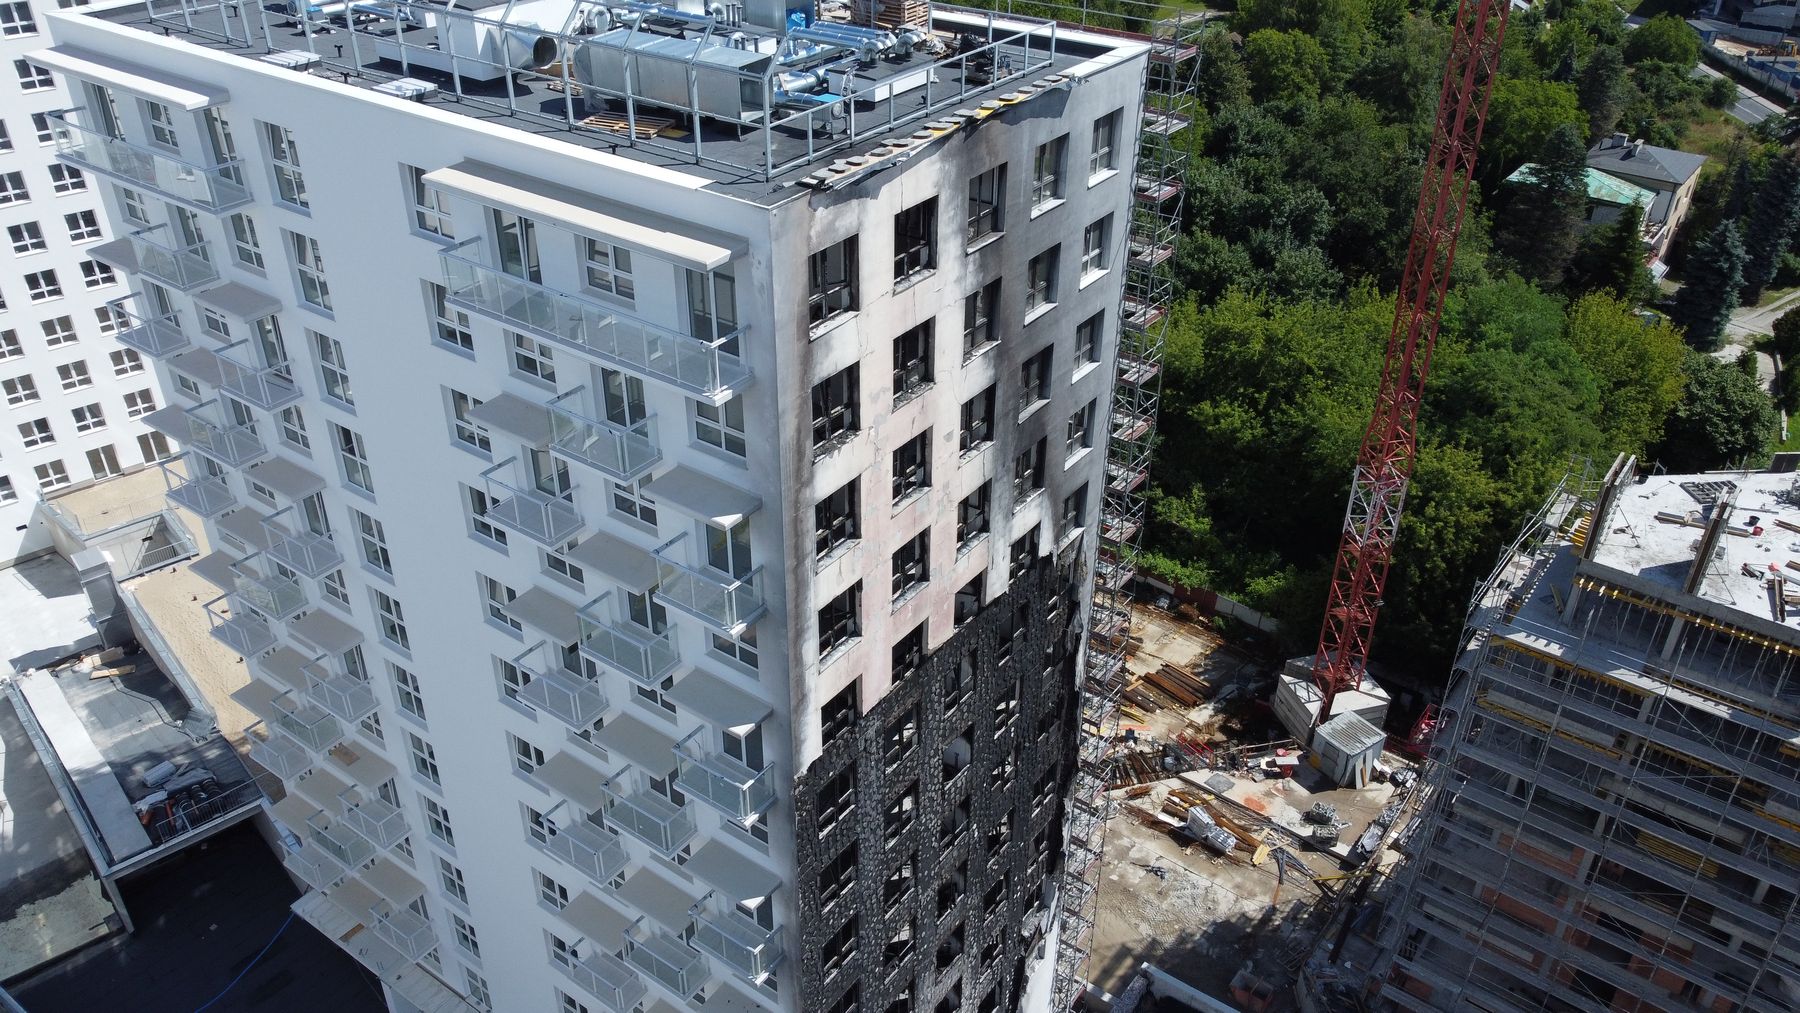 Prokuratura zajęła się sprawą pożaru wieżowca. Straty wstępnie oszacowano na 2,5 mln zł (zdjęcia)